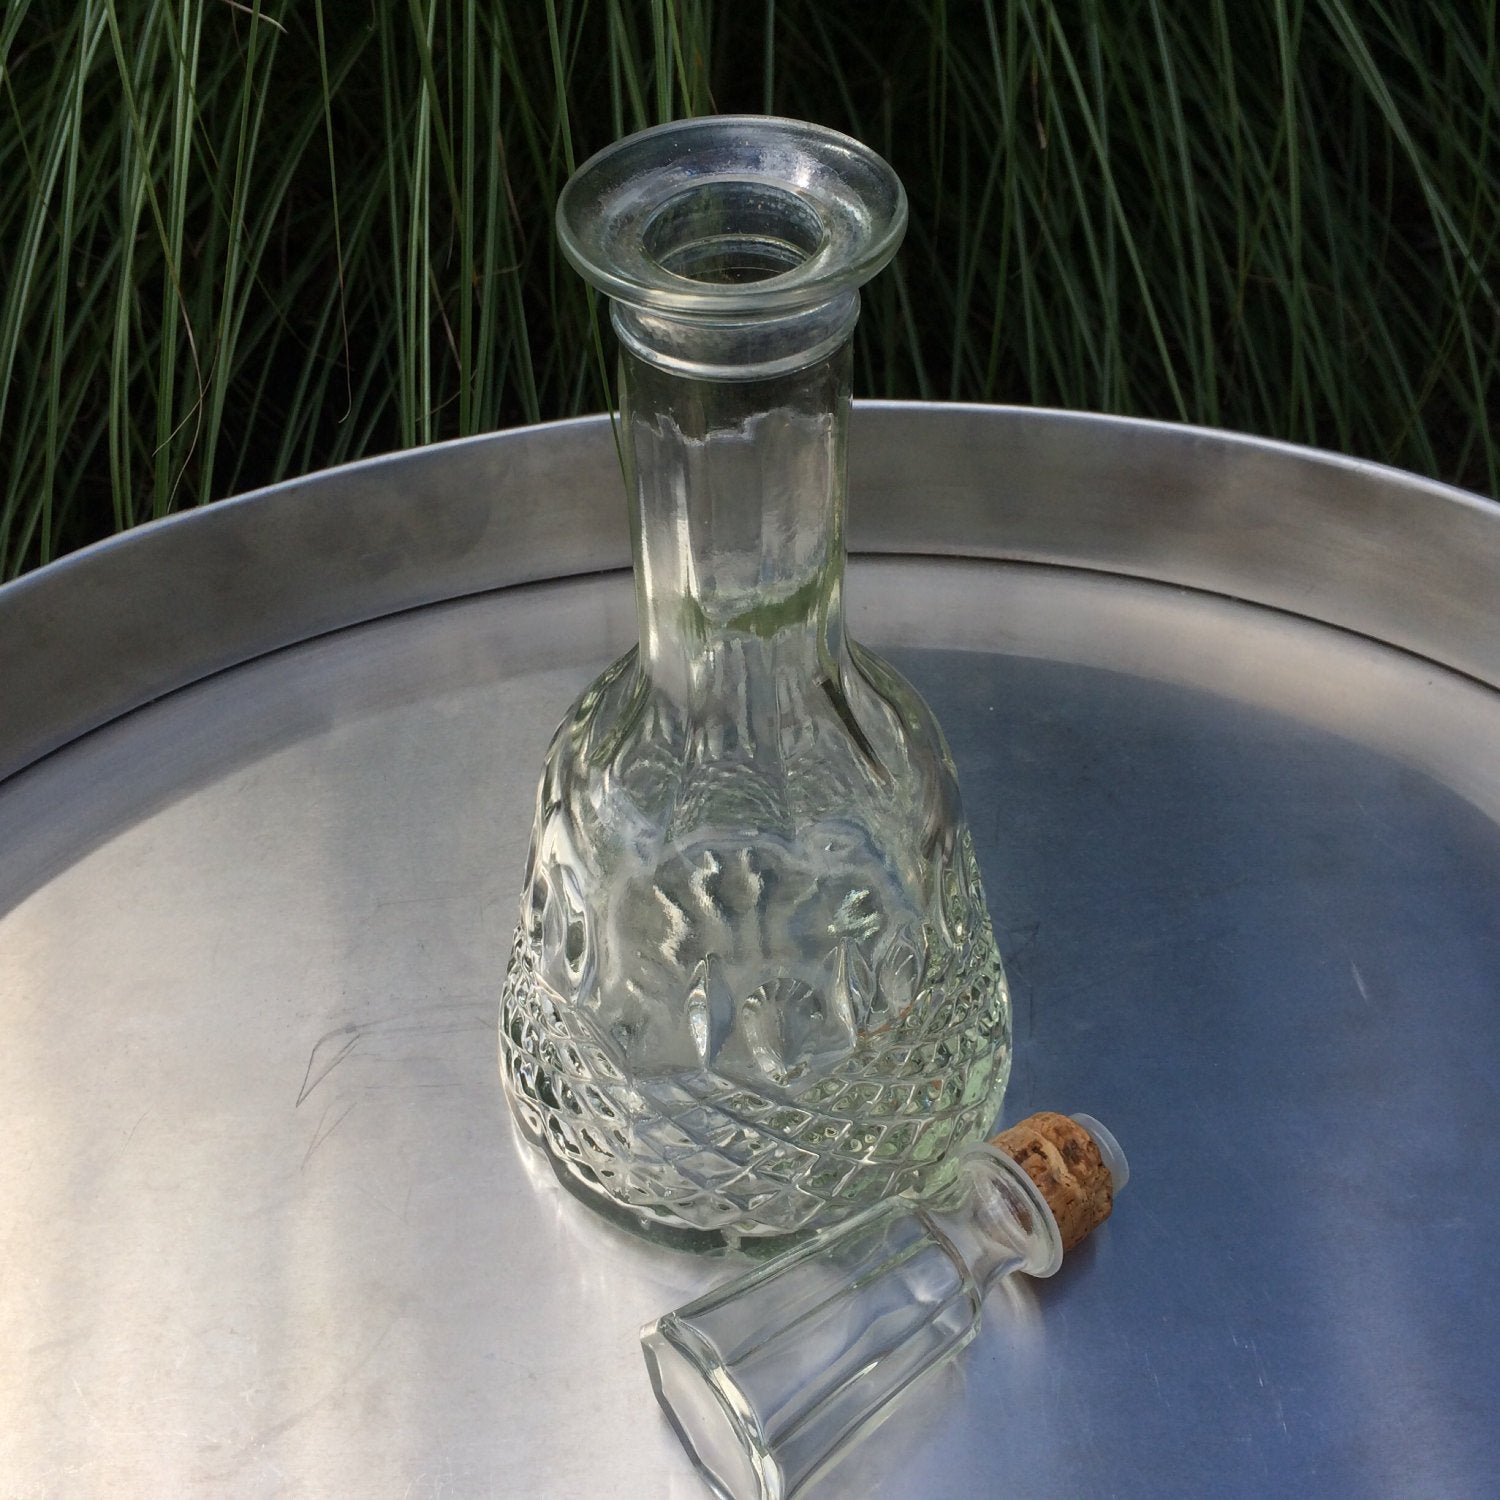 https://scotch-street-vintage.myshopify.com/cdn/shop/products/vintage-glass-decanter-large-ornate-pressed-glass-wine-or-liquor-bottle-barware-672300.jpg?v=1604509077